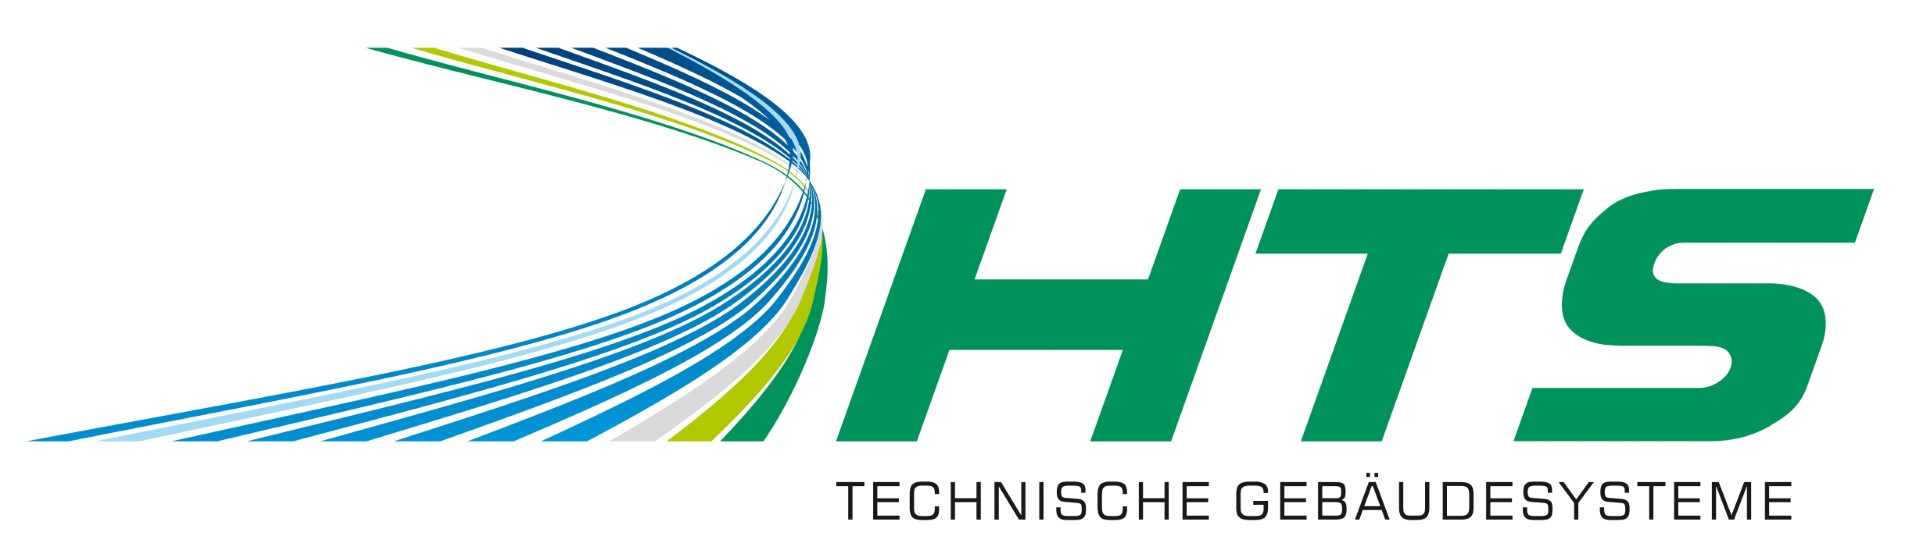 HTS GmbH technische Gebäudesysteme